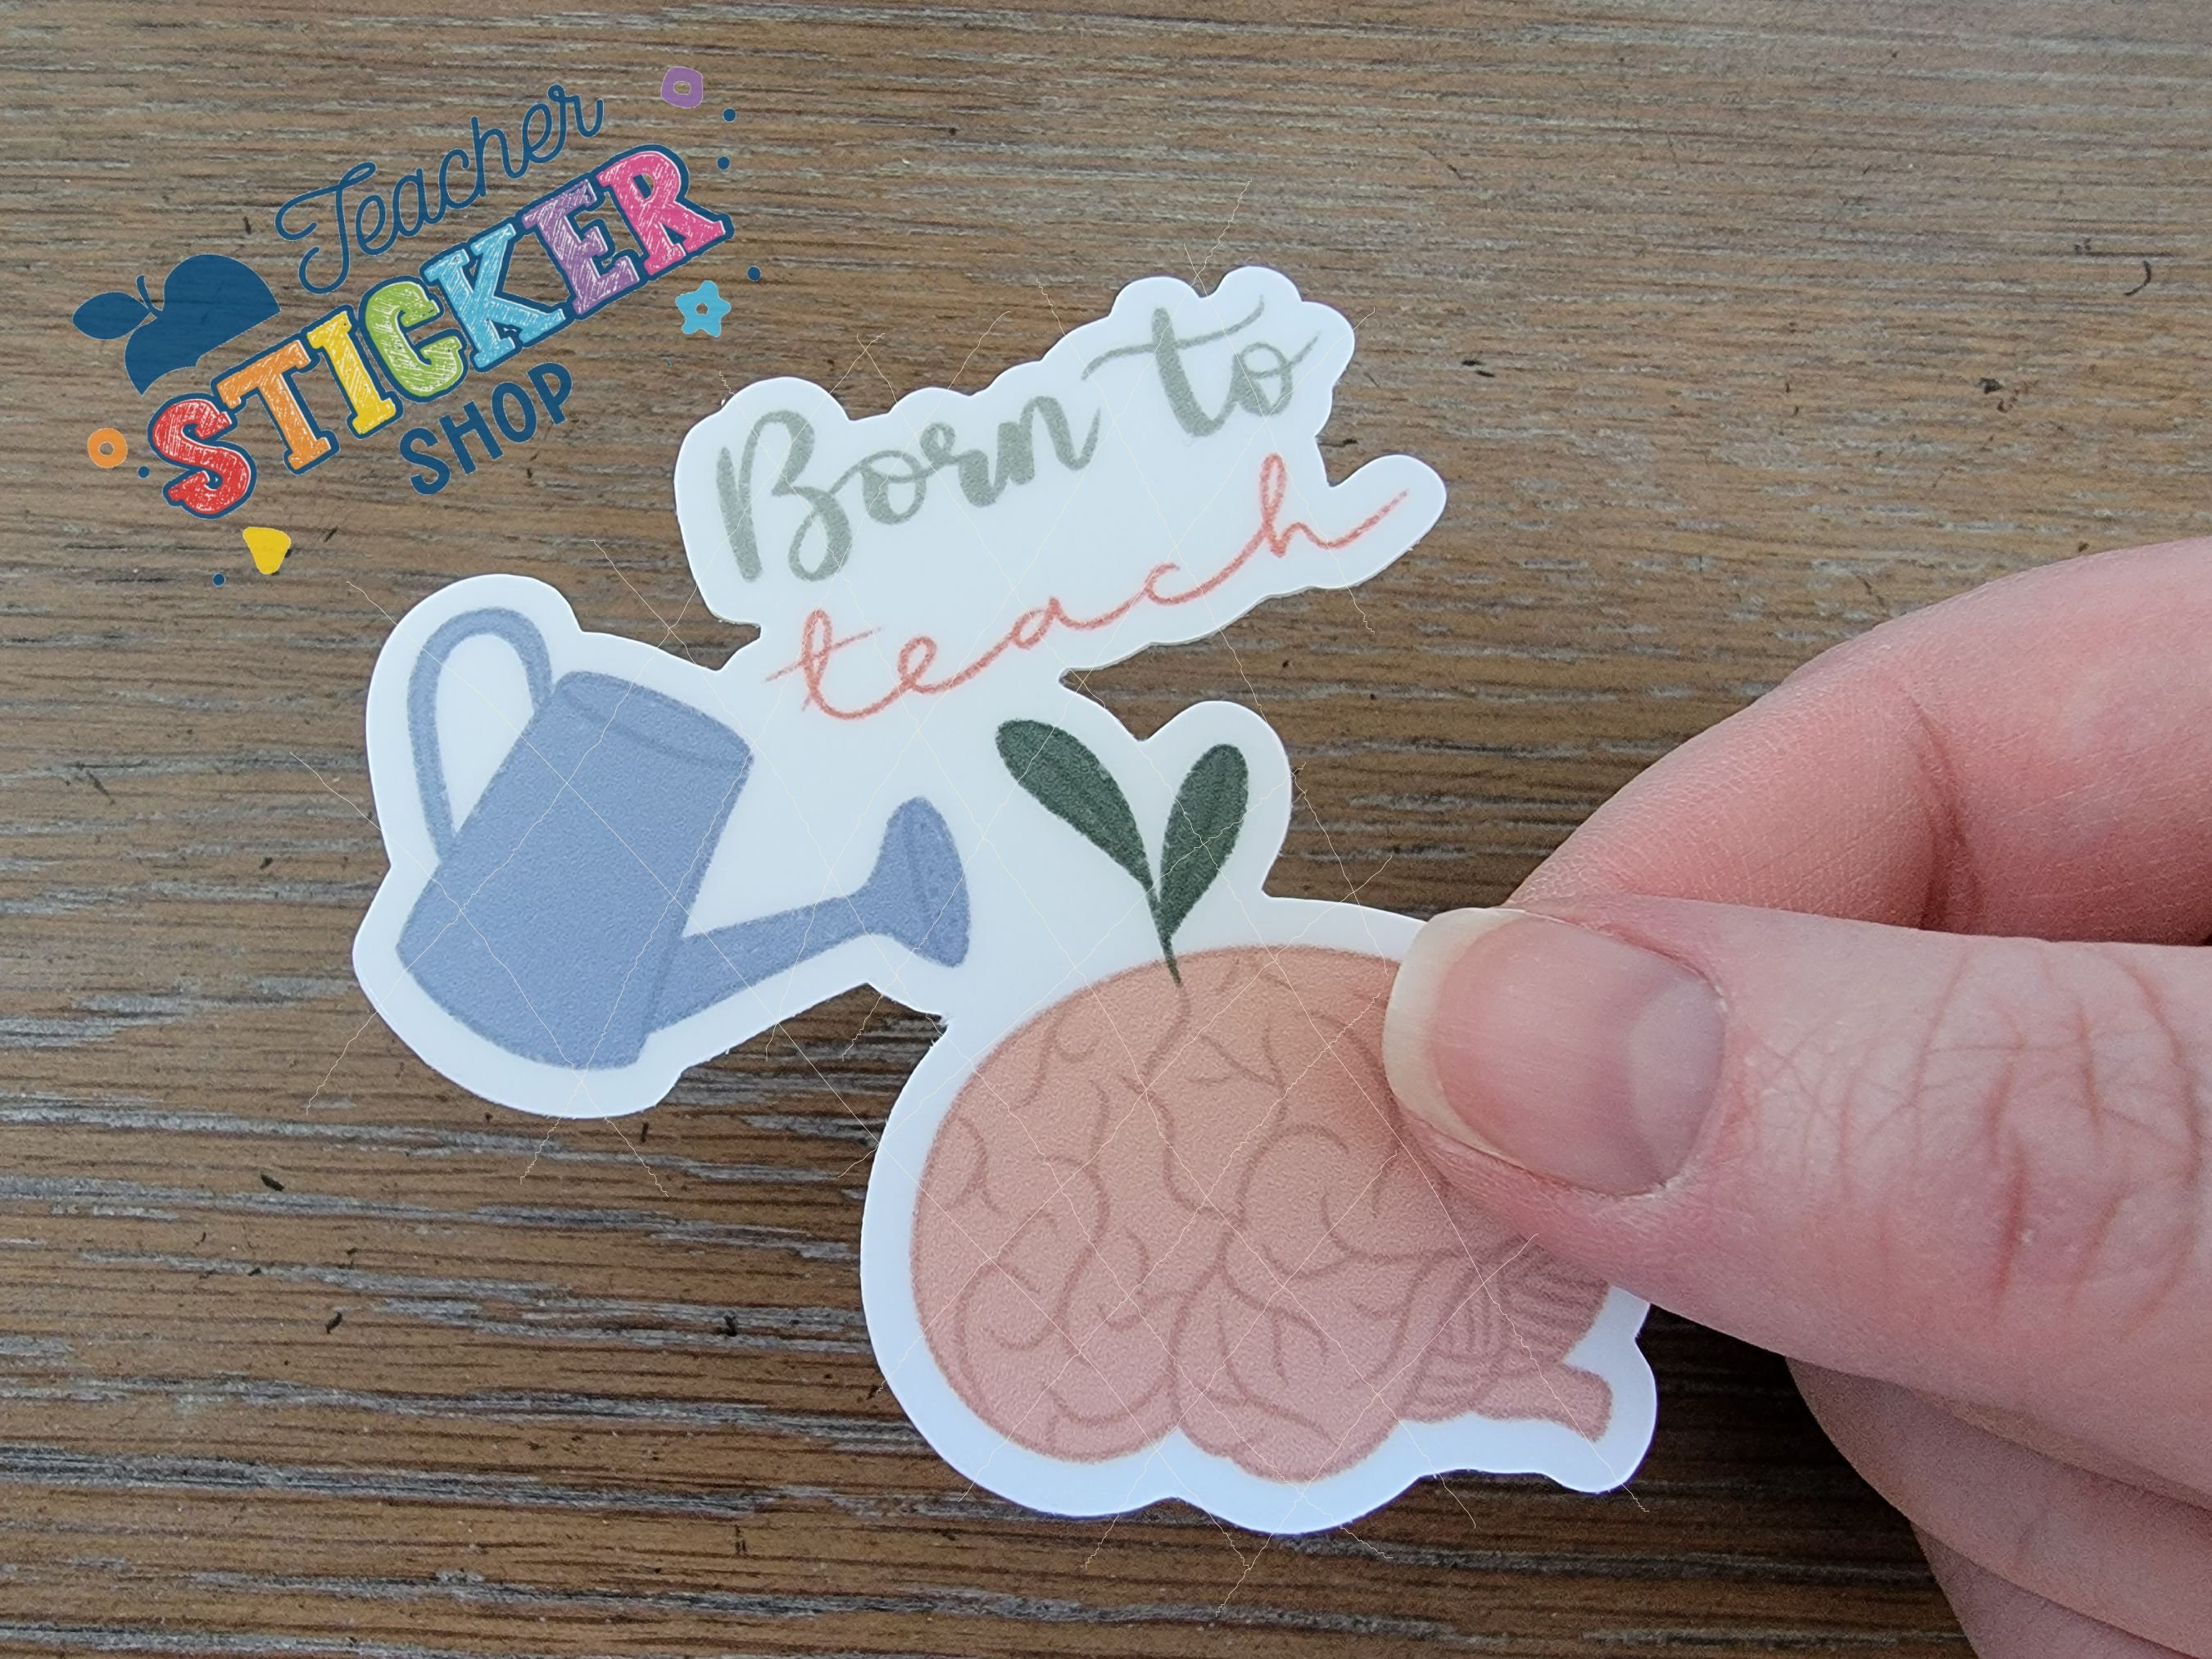 Proud High School Teacher Sticker - Teacher Stickers – InBooze